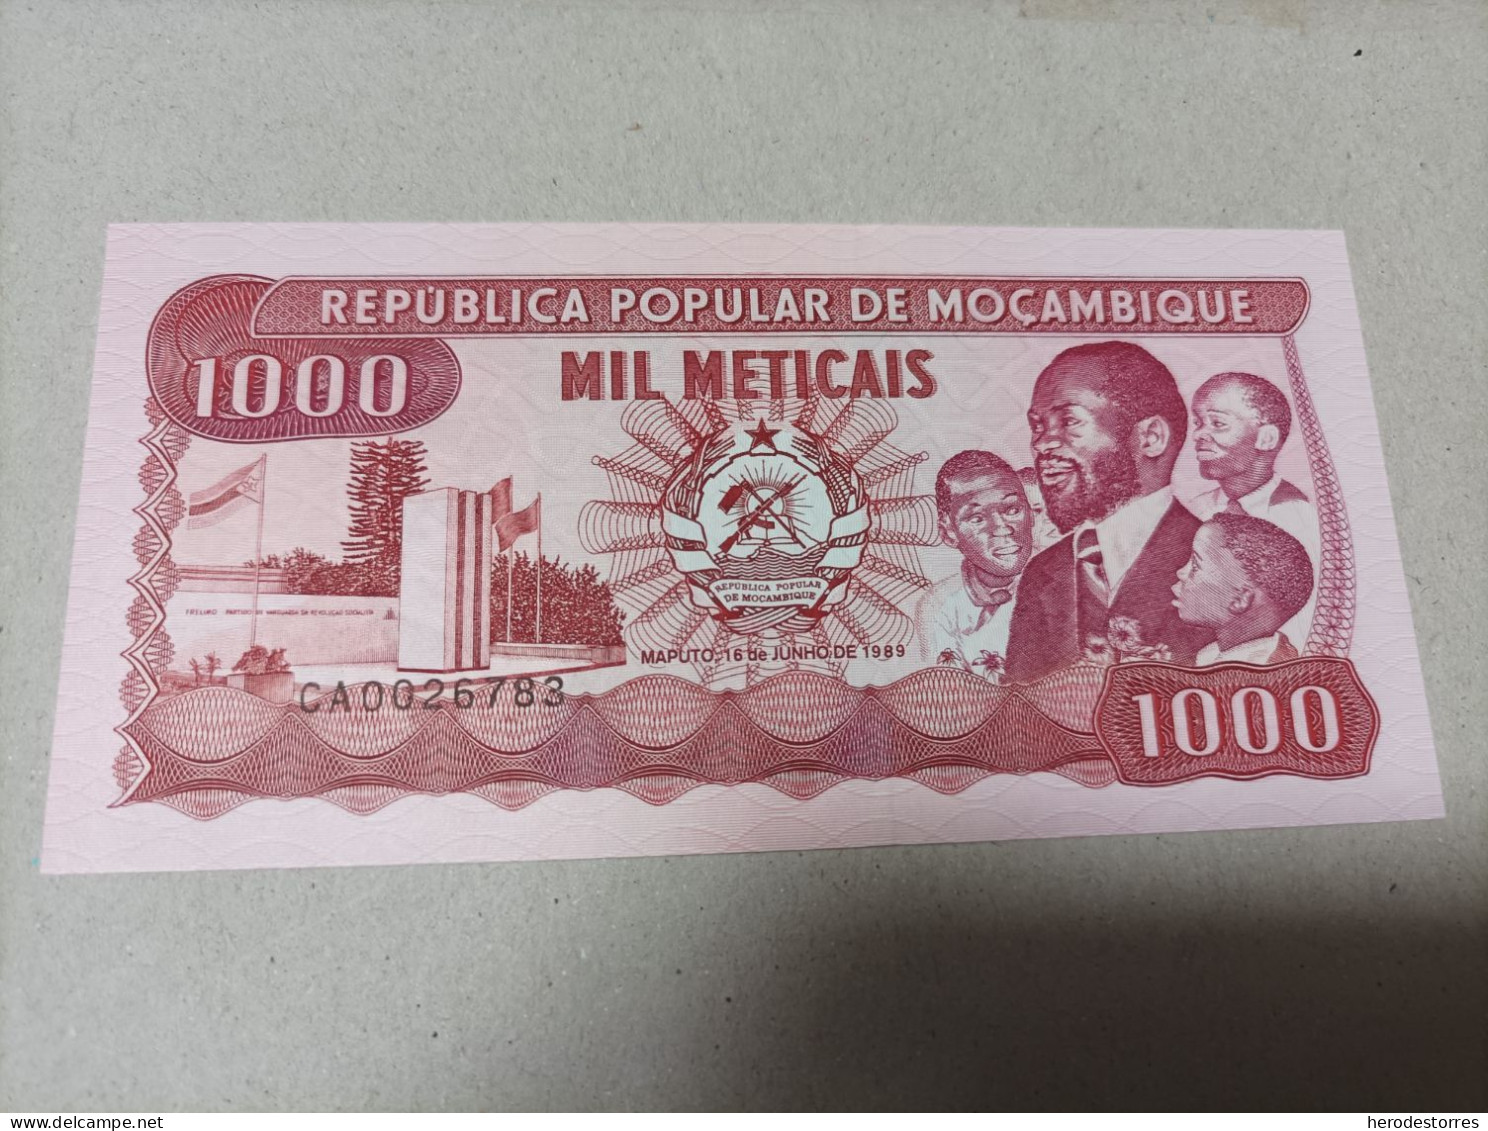 Billete Mozambique 1000 Meticais, Nº Bajisimo 0026783, Año 1989, UNC - Mozambique